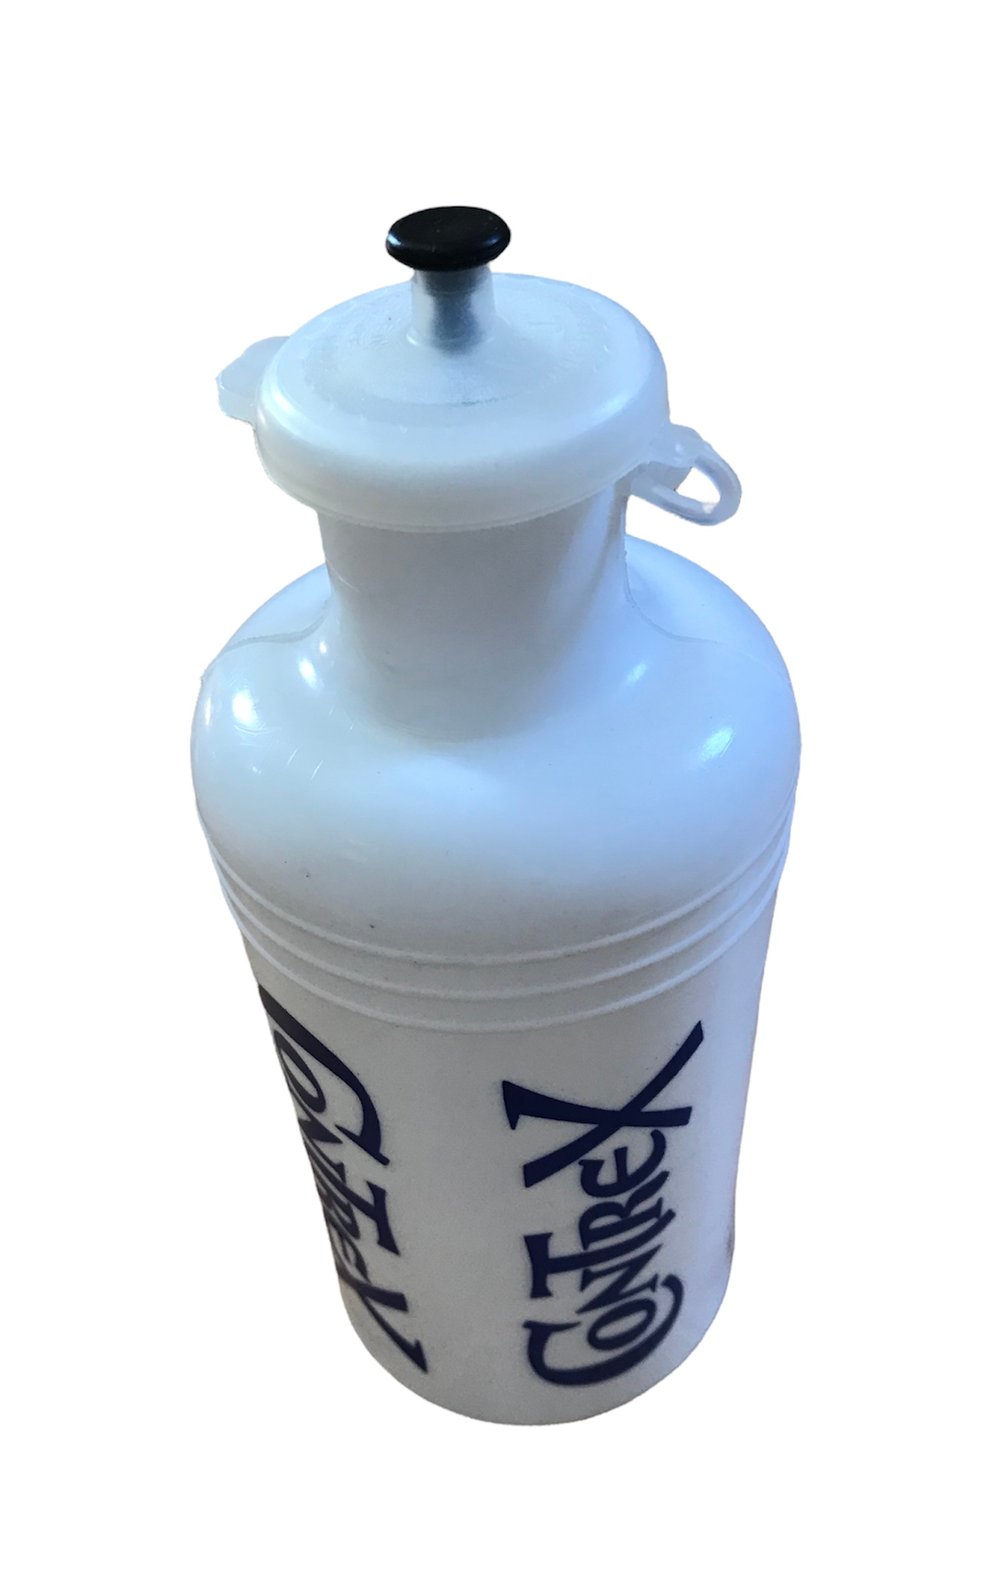 1981-84 - Tour de France / Contrex water bottle